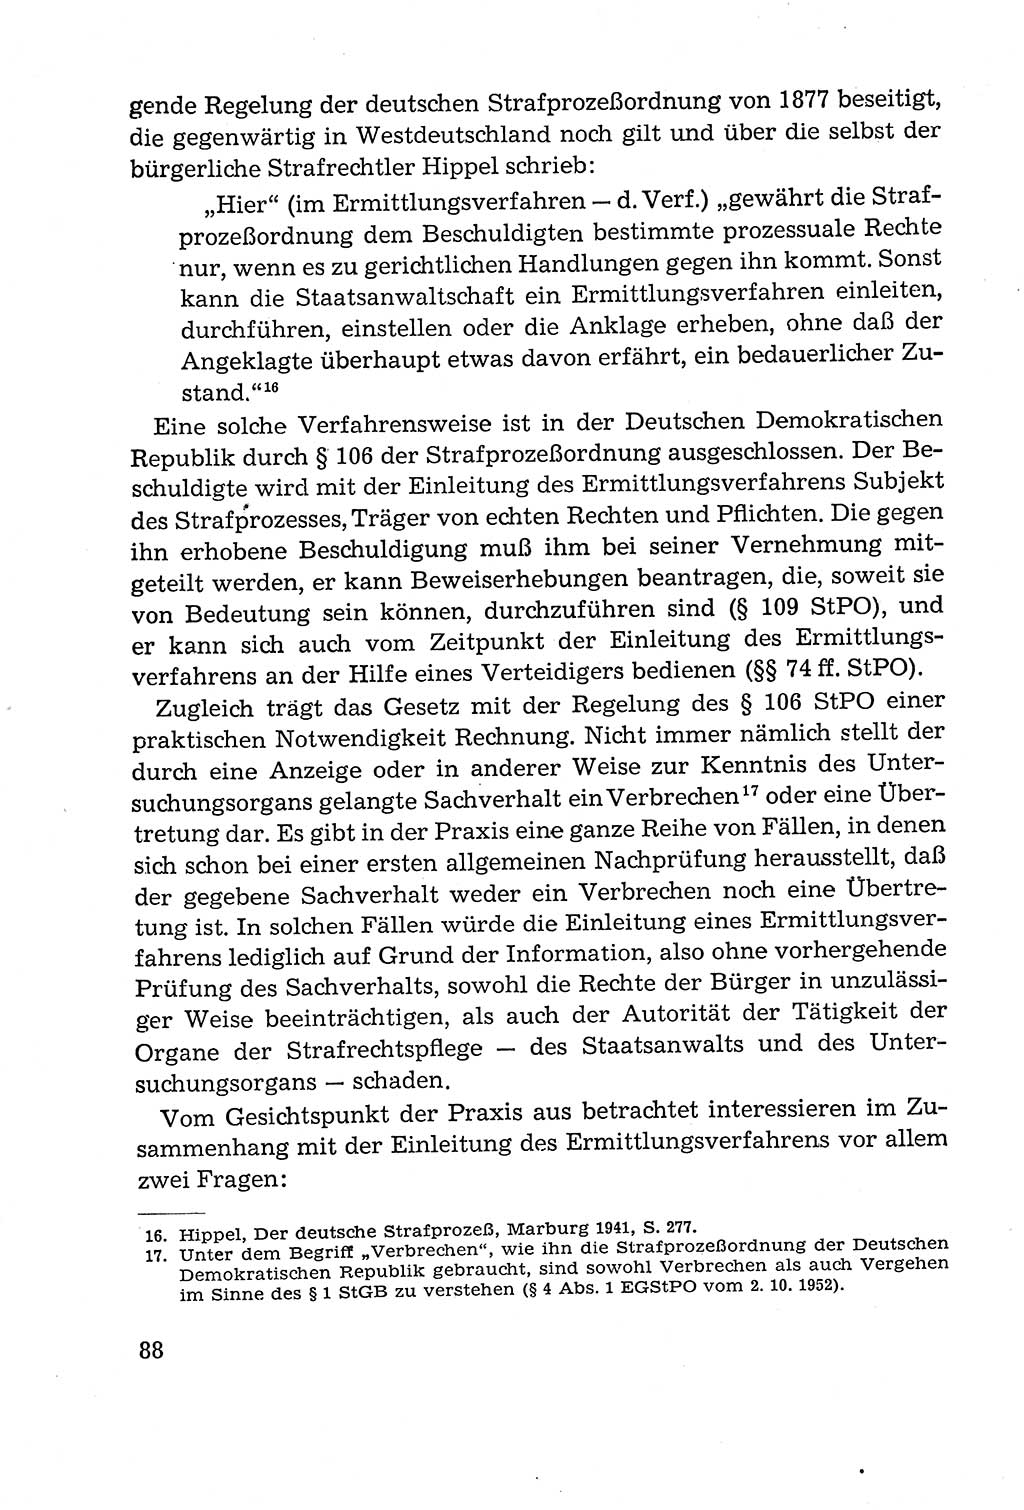 Leitfaden des Strafprozeßrechts der Deutschen Demokratischen Republik (DDR) 1959, Seite 88 (LF StPR DDR 1959, S. 88)